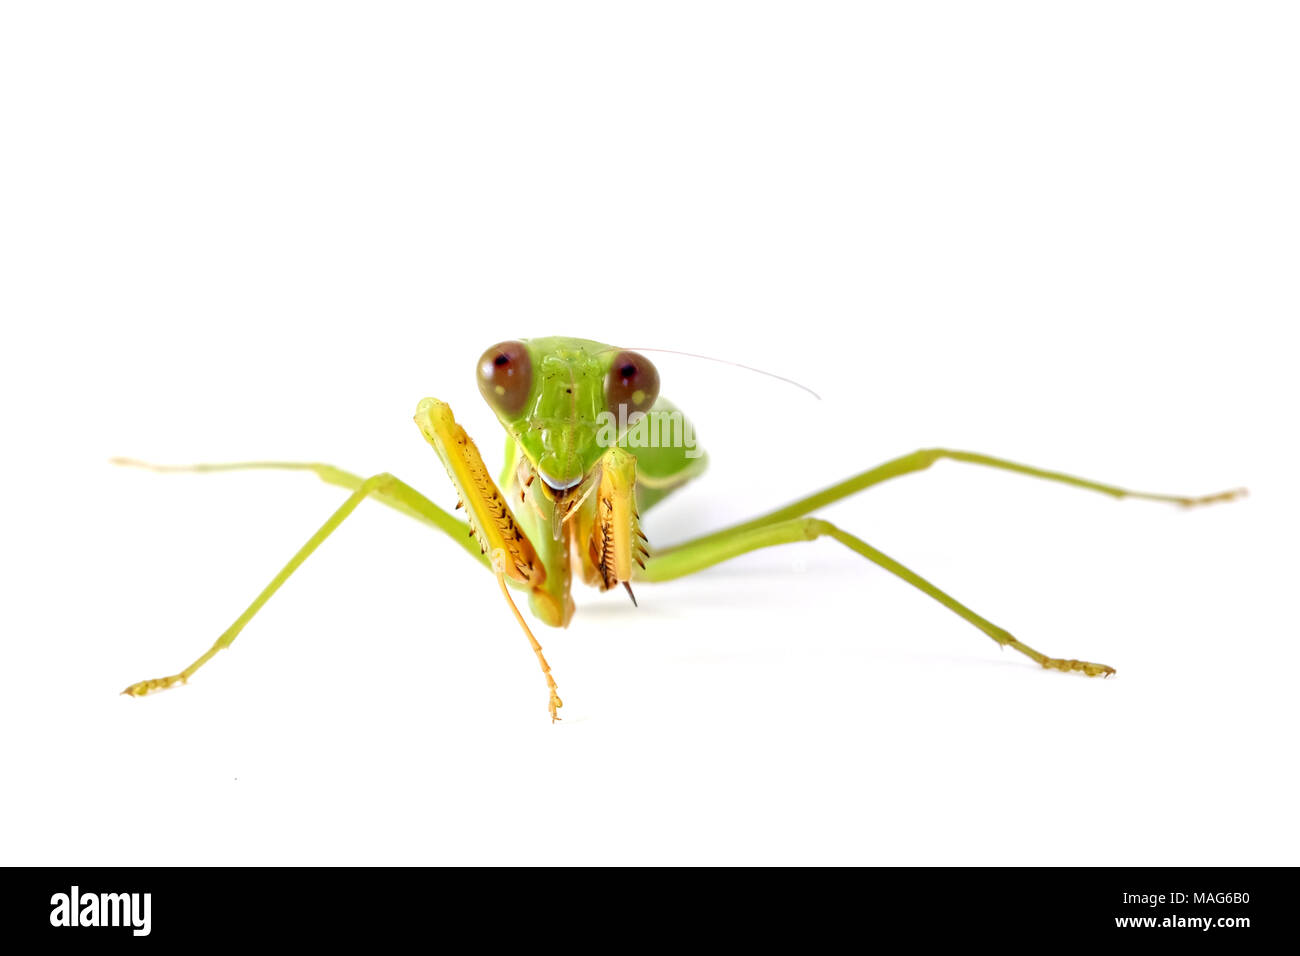 Female European Mantis or Mantis religiosa - animal behaviors front view isolated on white background. Stock Photo